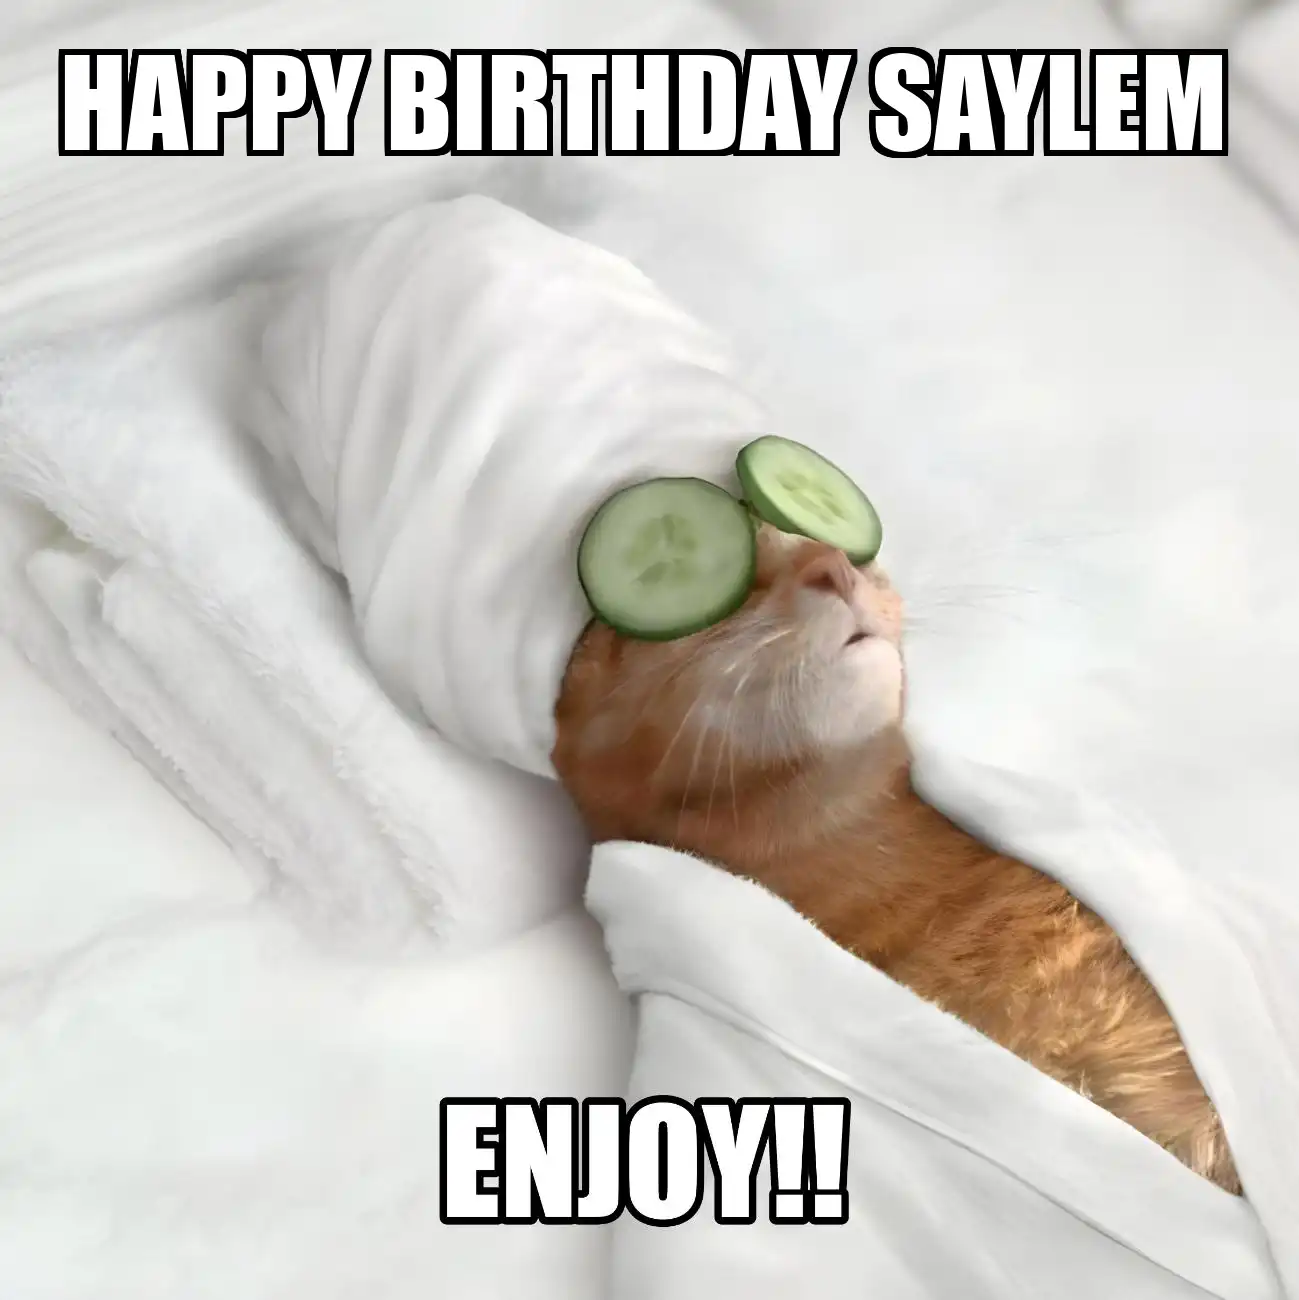 Happy Birthday Saylem Enjoy Cat Meme